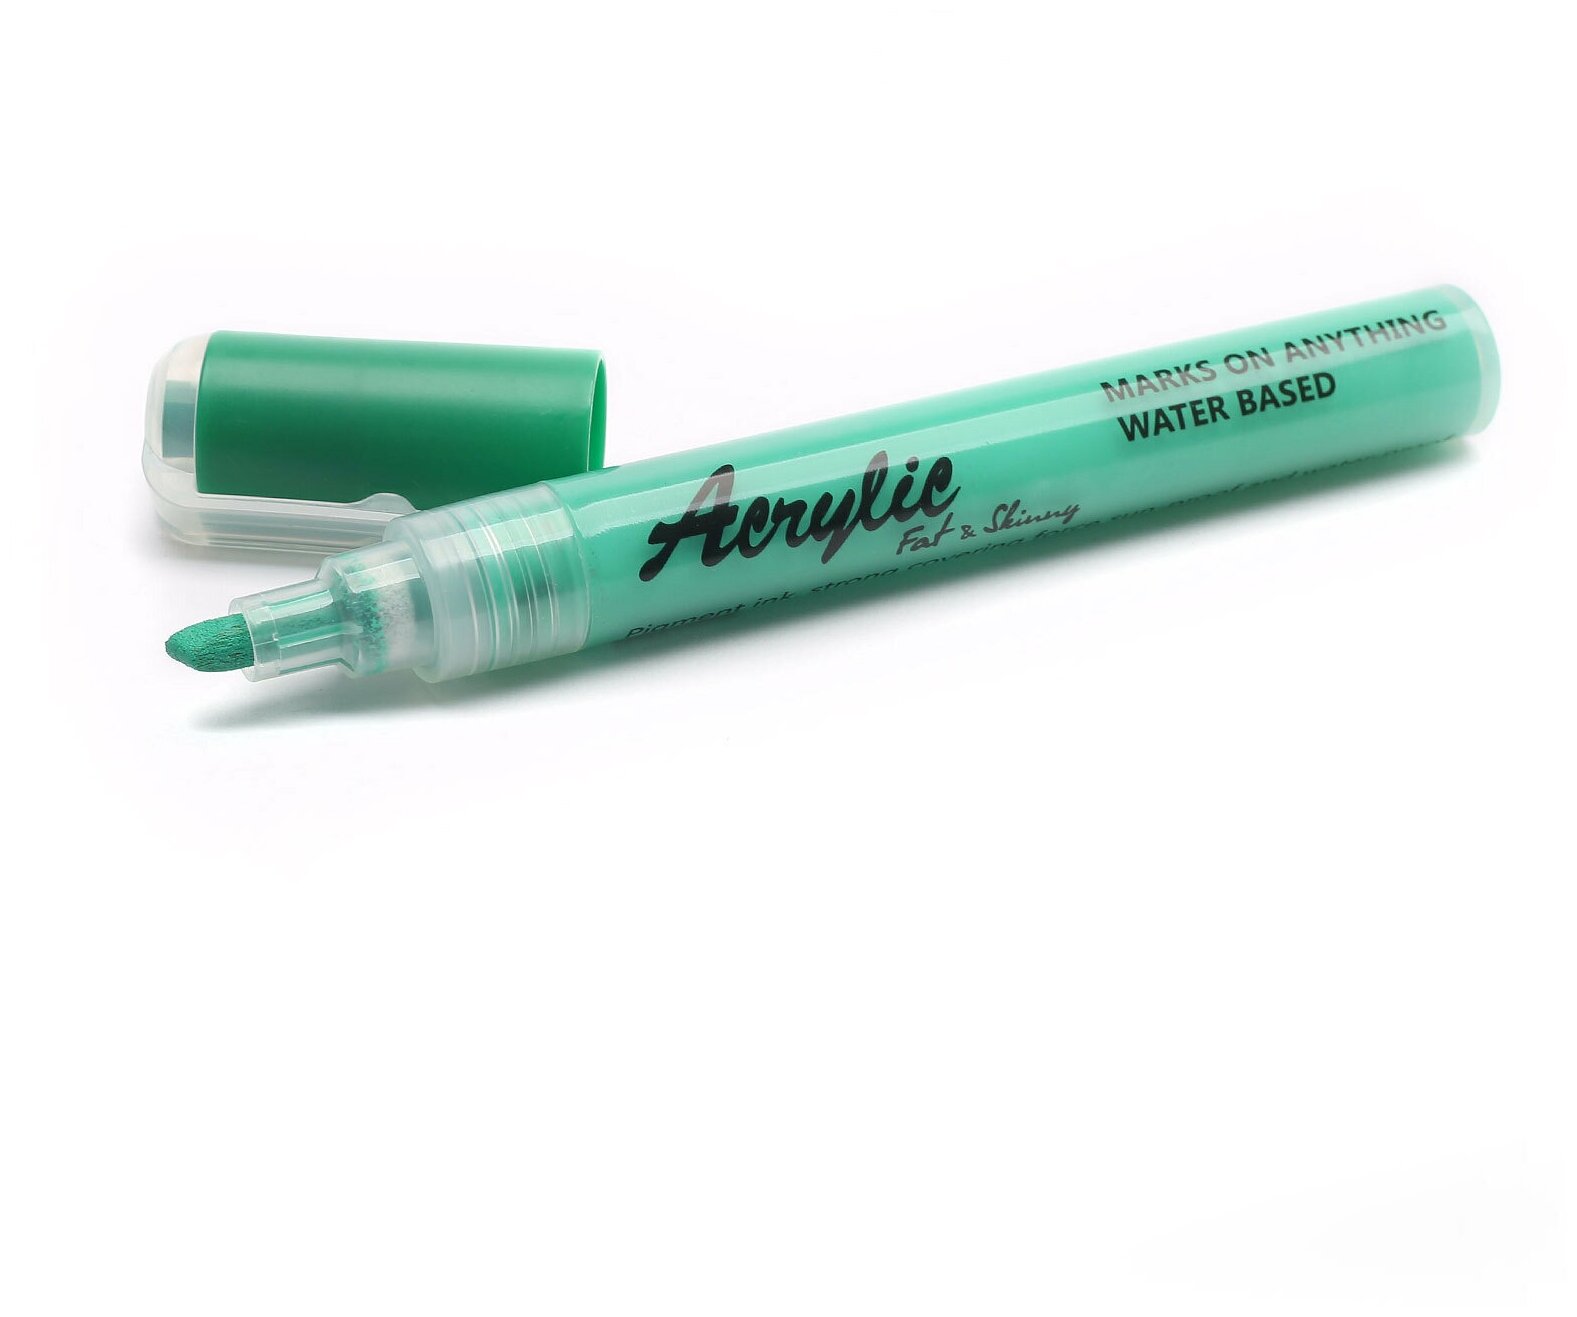 Акриловый маркер Fat&Skinny 5 мм / 2 мм цвет светло-зеленый, peal green